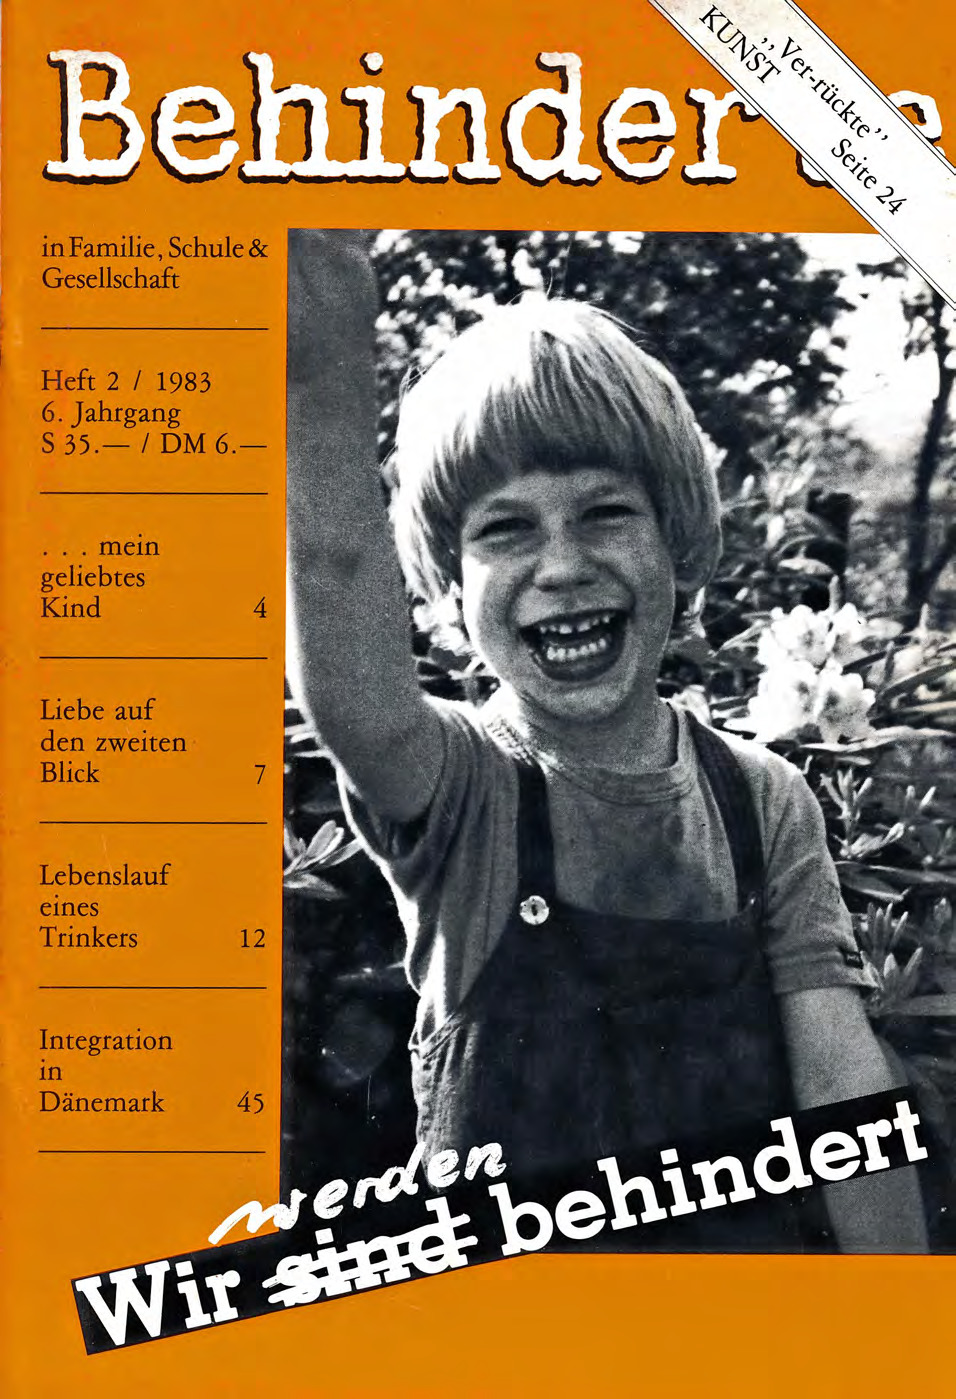 Titelbild der Zeitschrift BEHINDERTE MENSCHEN, Ausgabe 2/1983 "Wir werden behindert"